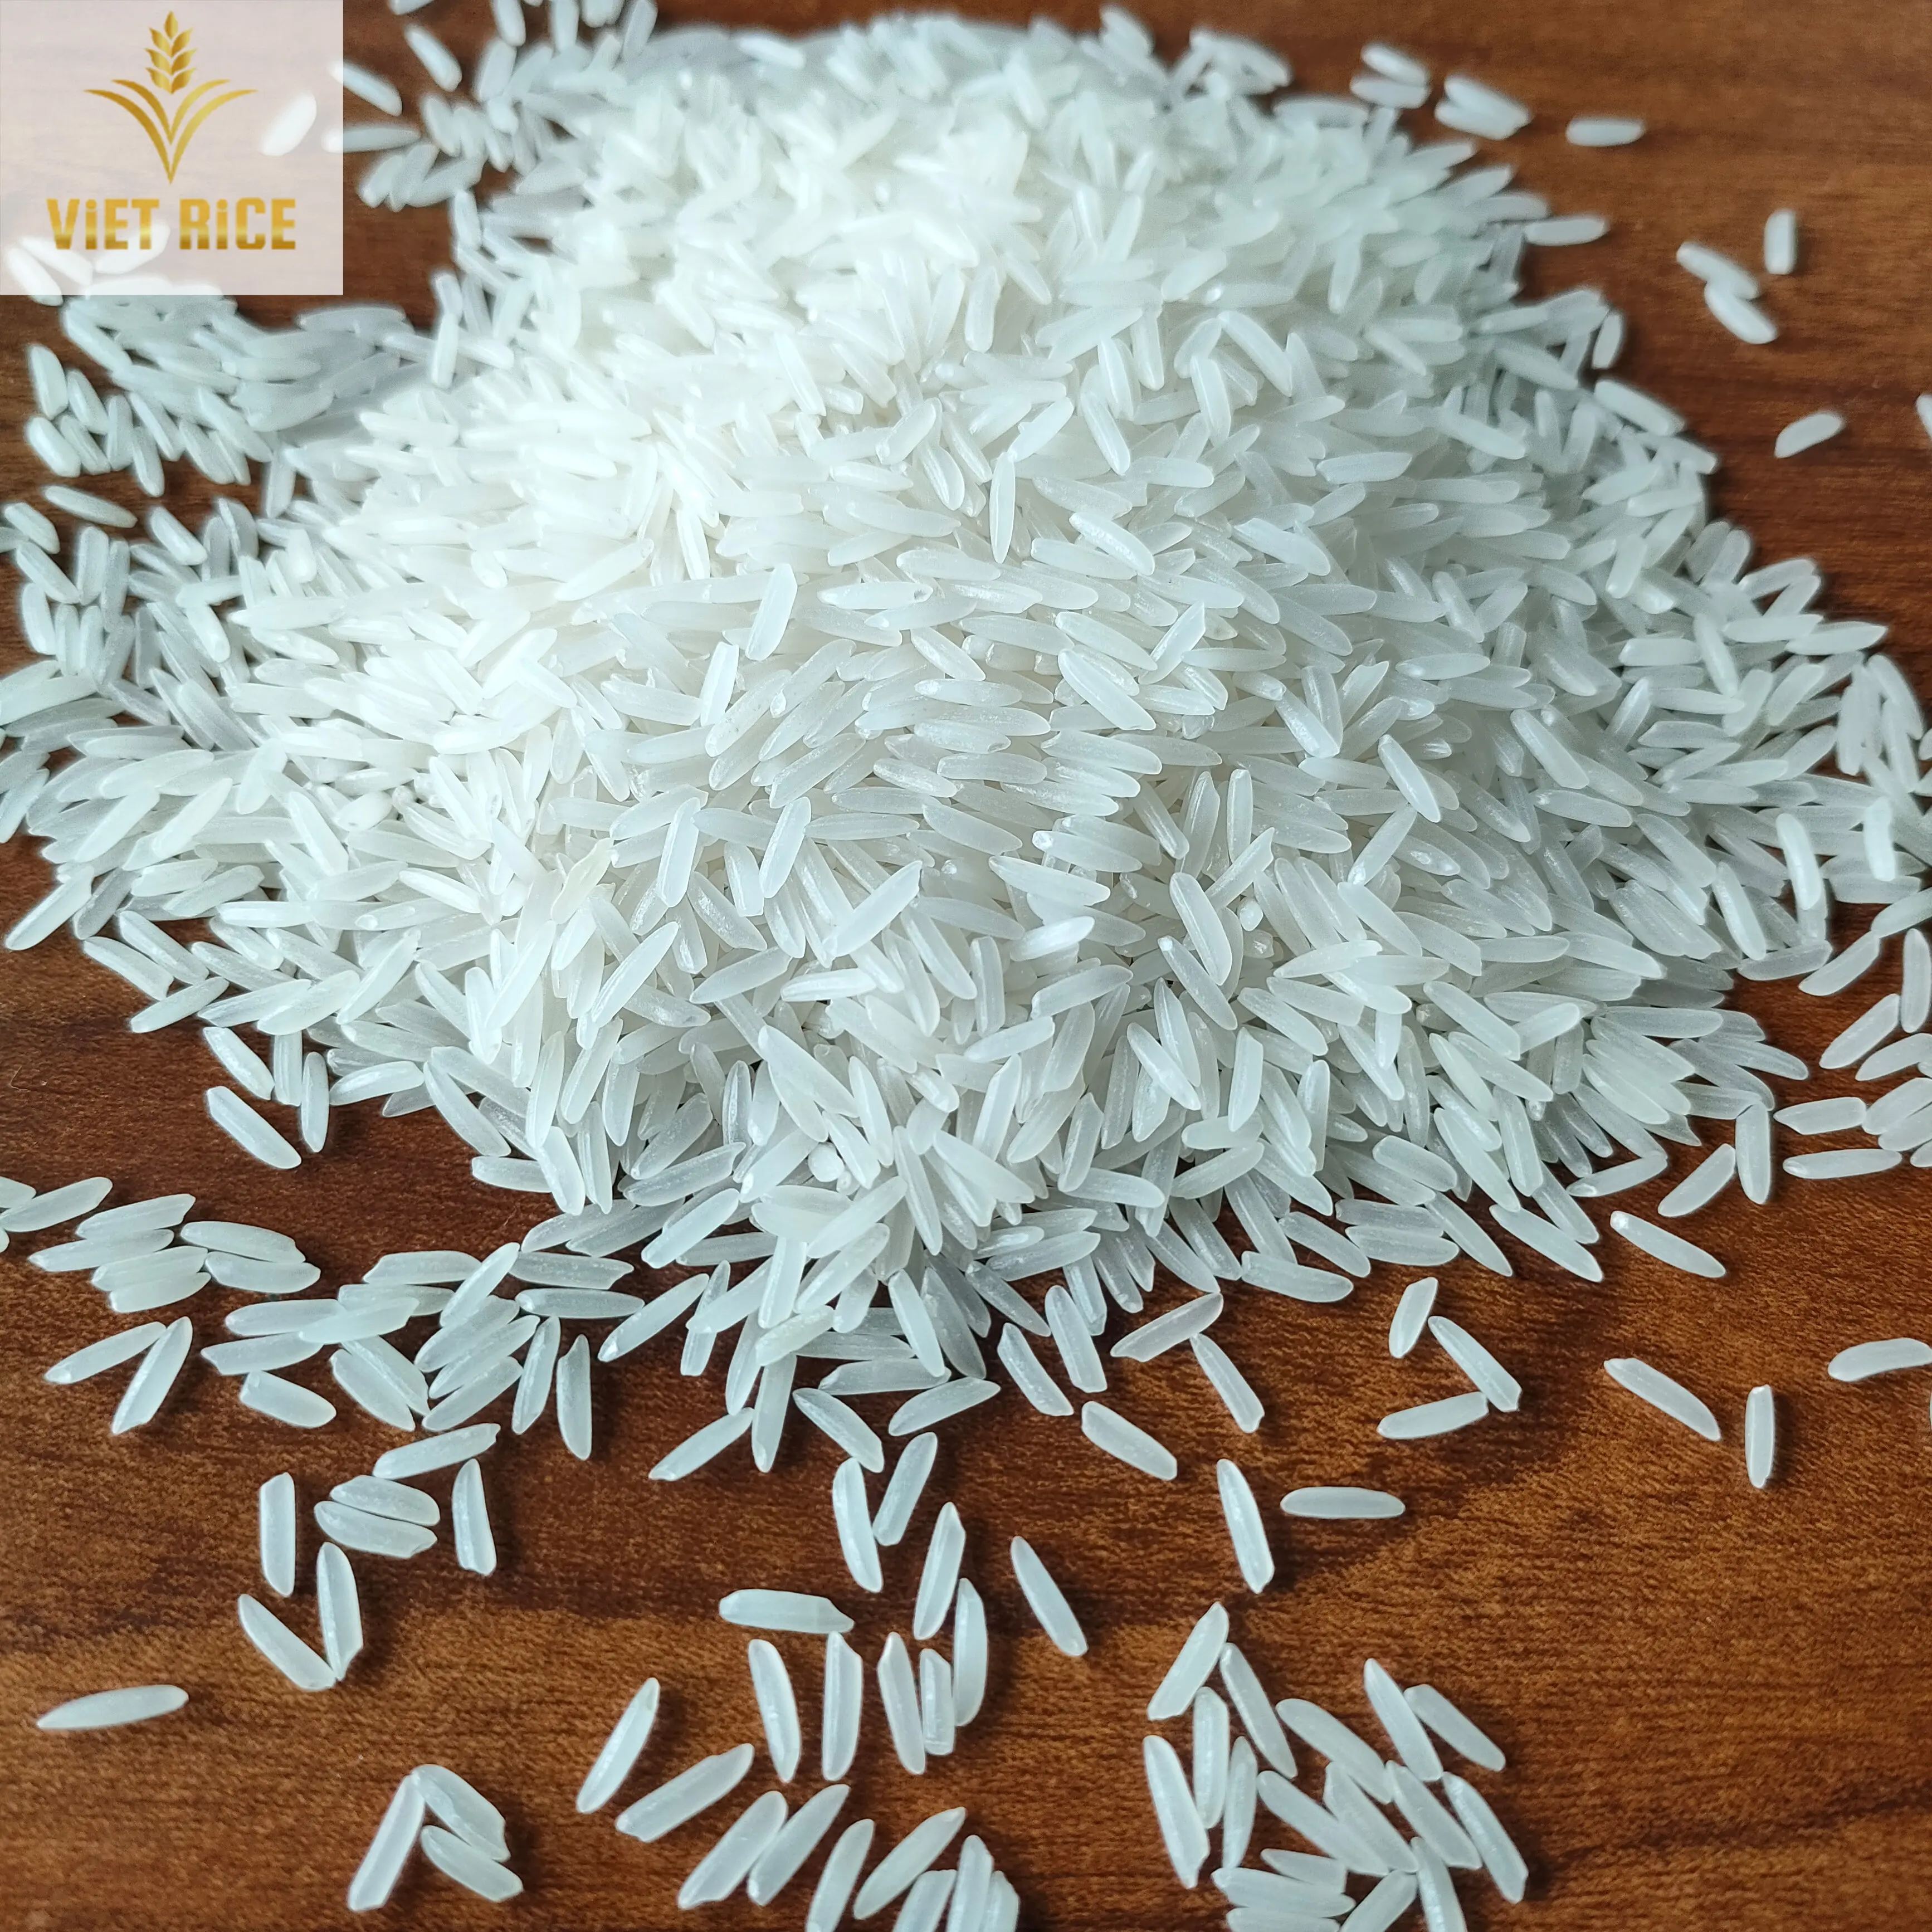 긴 곡물 향 백미 ST25-베트남에서 선도적 인 제조 업체 및 수출자가 공급하는 세계 최고의 쌀 2019